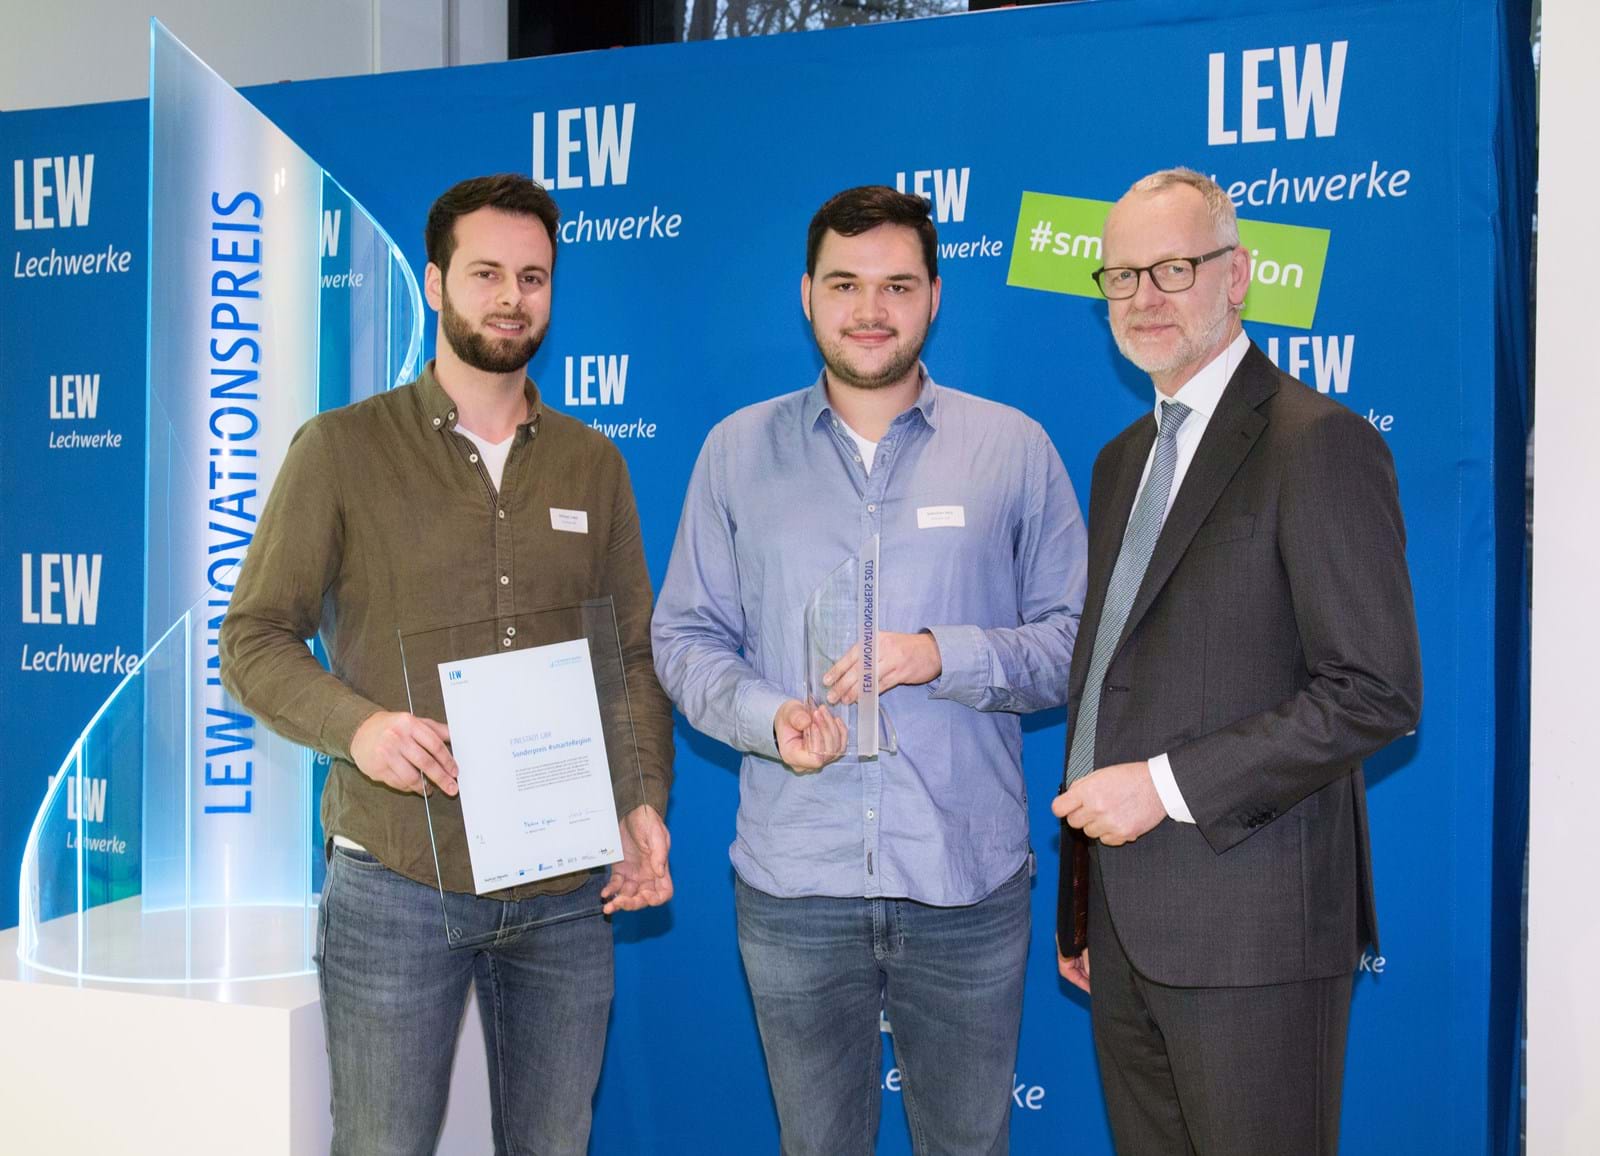 LEW-Vorstandsmitglied Dr. Markus Litpher (r.) überreicht Pokal und Urkunde für den Sonderpreis #smarteRegion an Michael Lodes (l.) und Sebastian Seitz von der EineStadt GmbH.